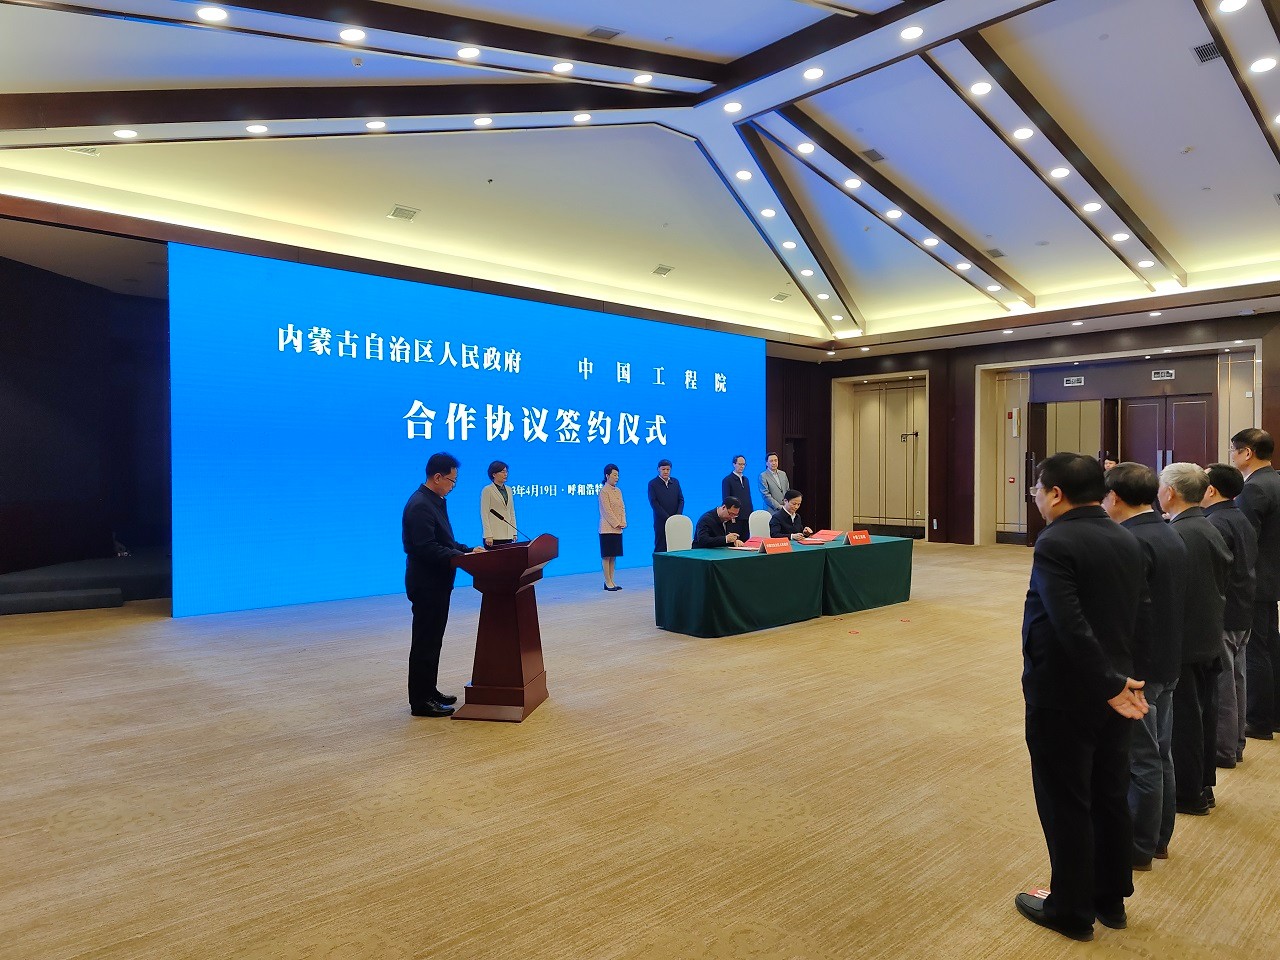 中国工程院 内蒙古自治区人民政府合作协议签约暨中国工程科技发展战略内蒙古研究院揭牌成立